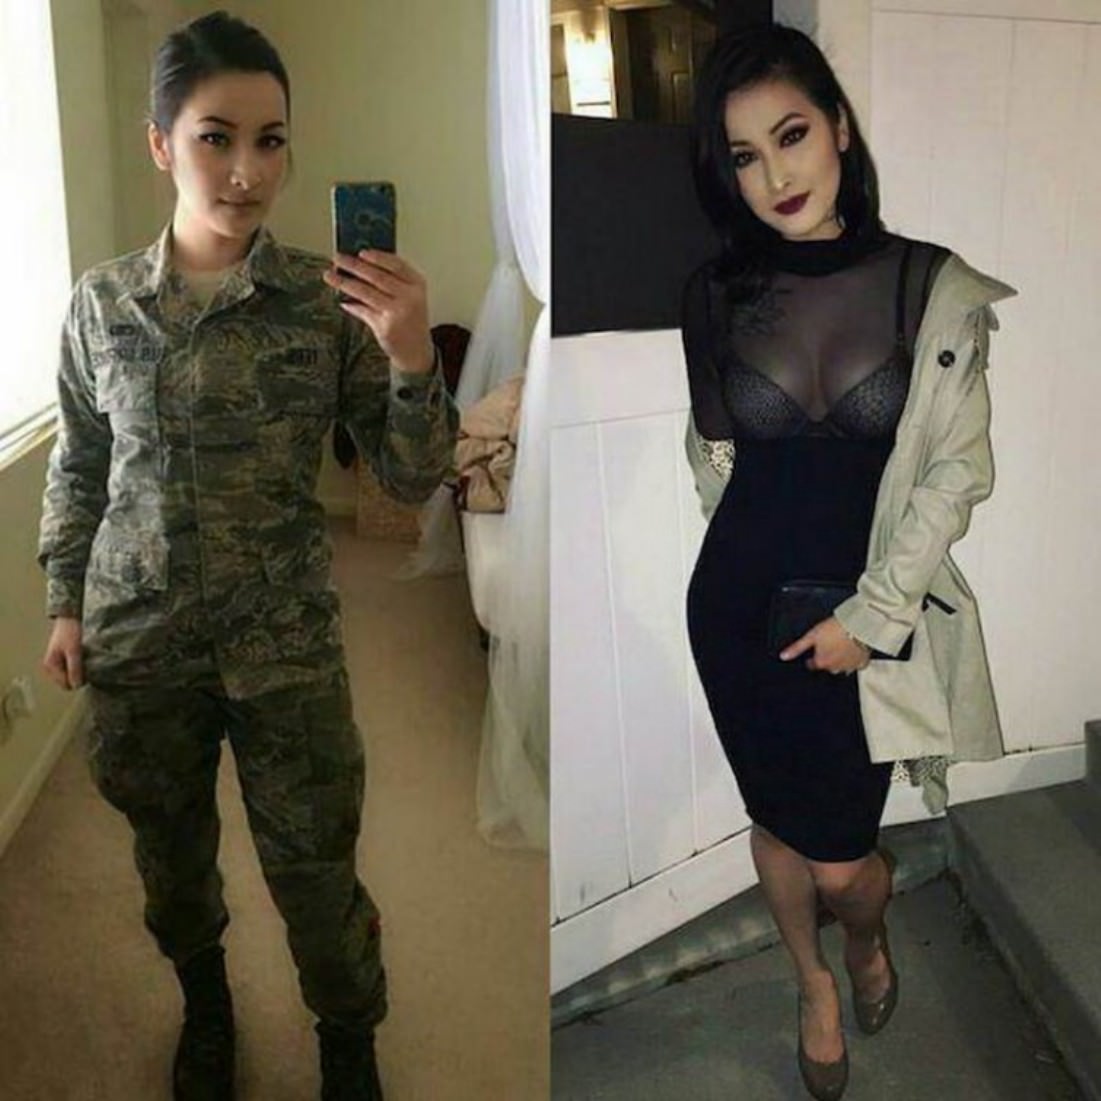 Ladies in uniforms